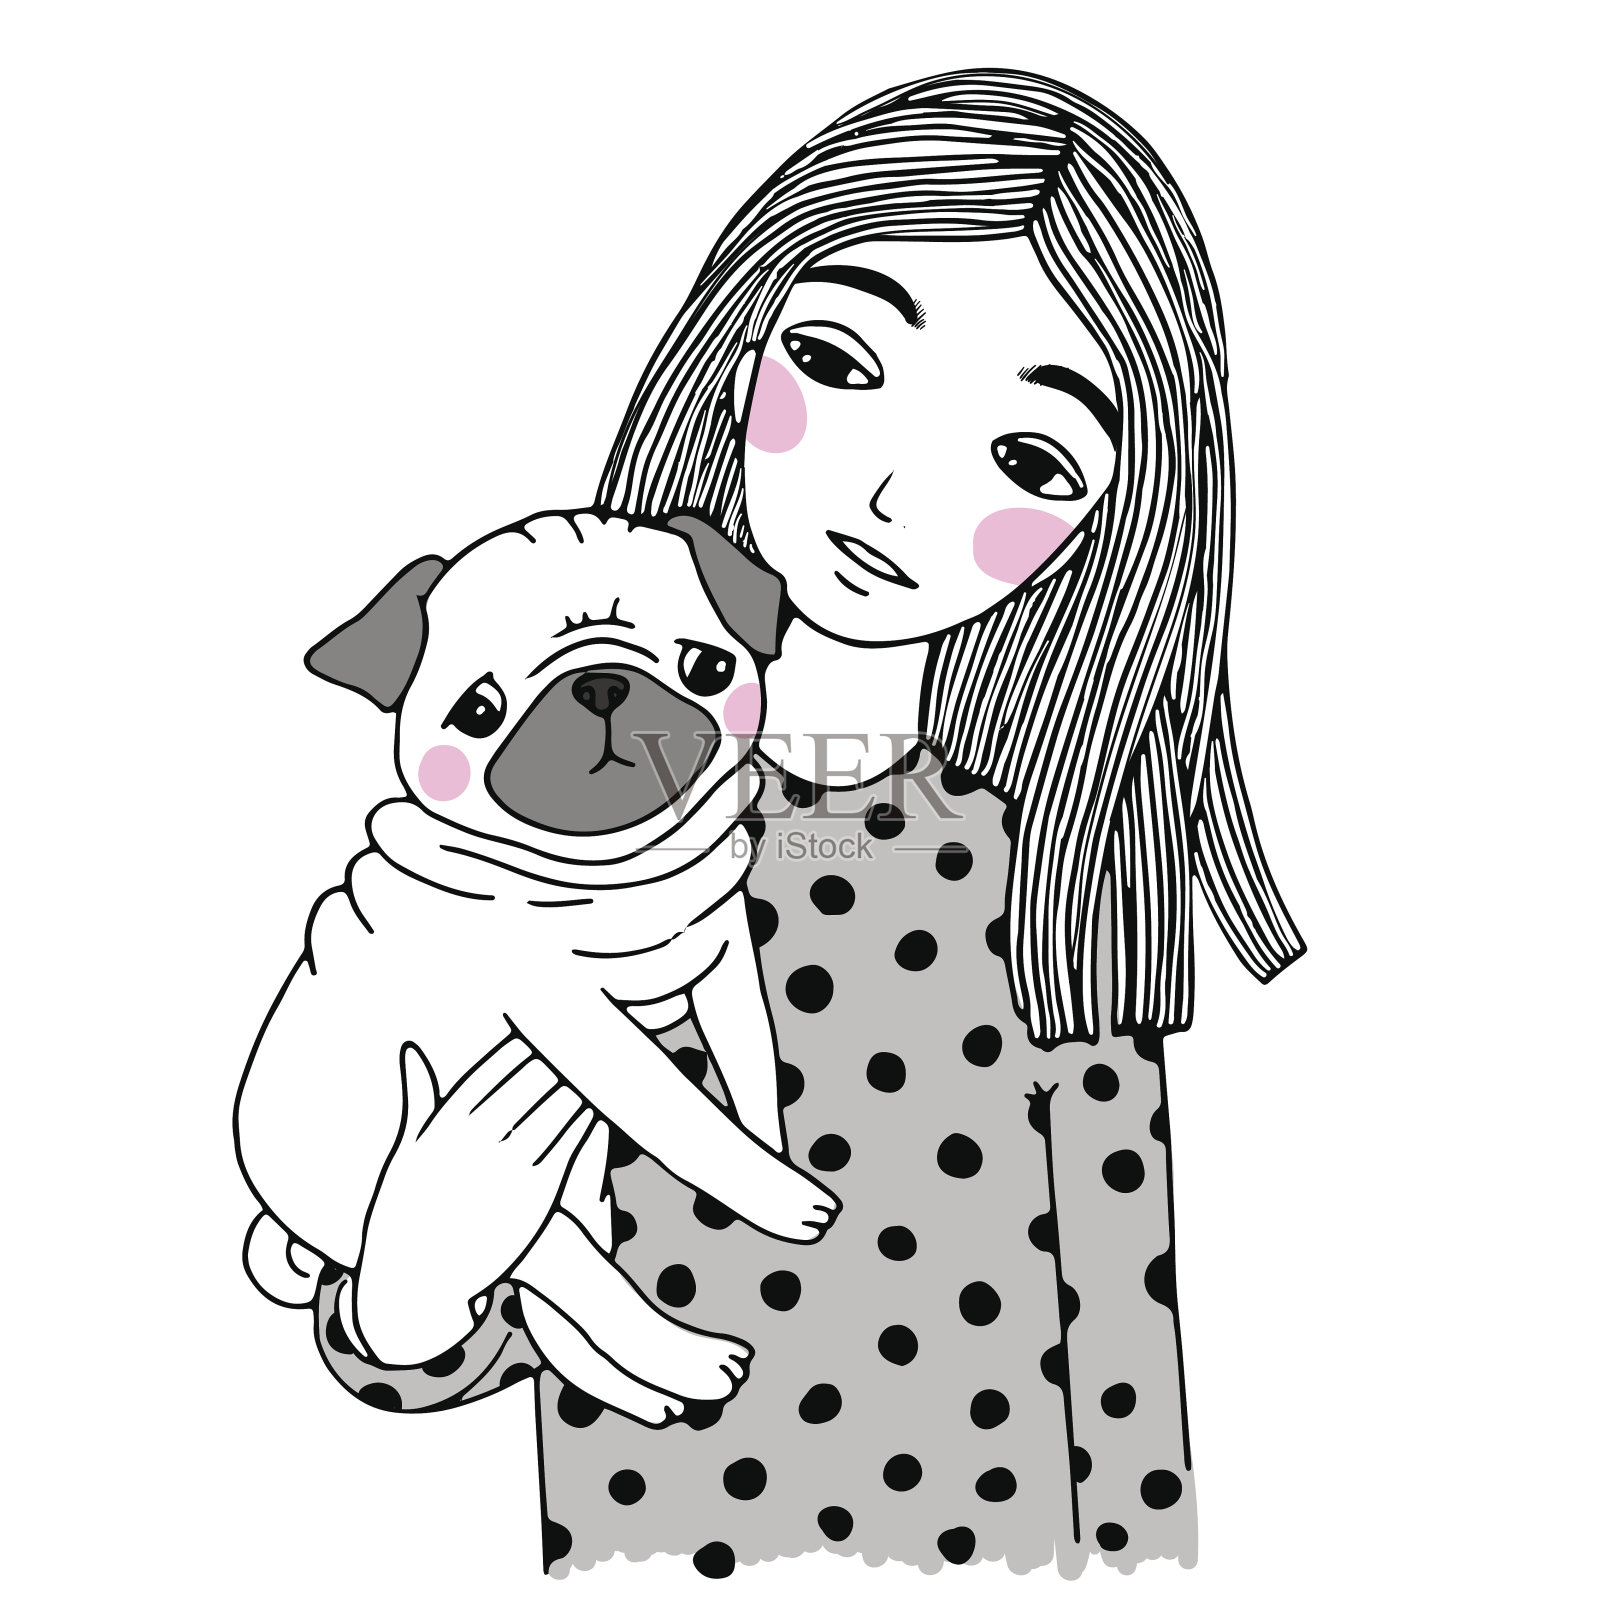 漂亮的小女孩和可爱的哈巴狗。插画图片素材